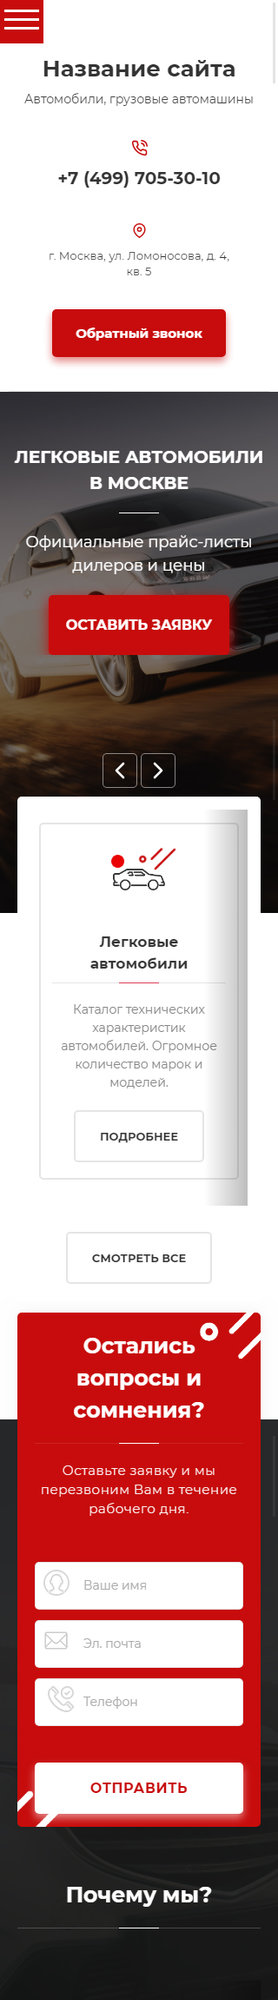 Готовый Сайт-Бизнес № 2555700 - Автомобили, грузовые автомашины (Мобильная версия)